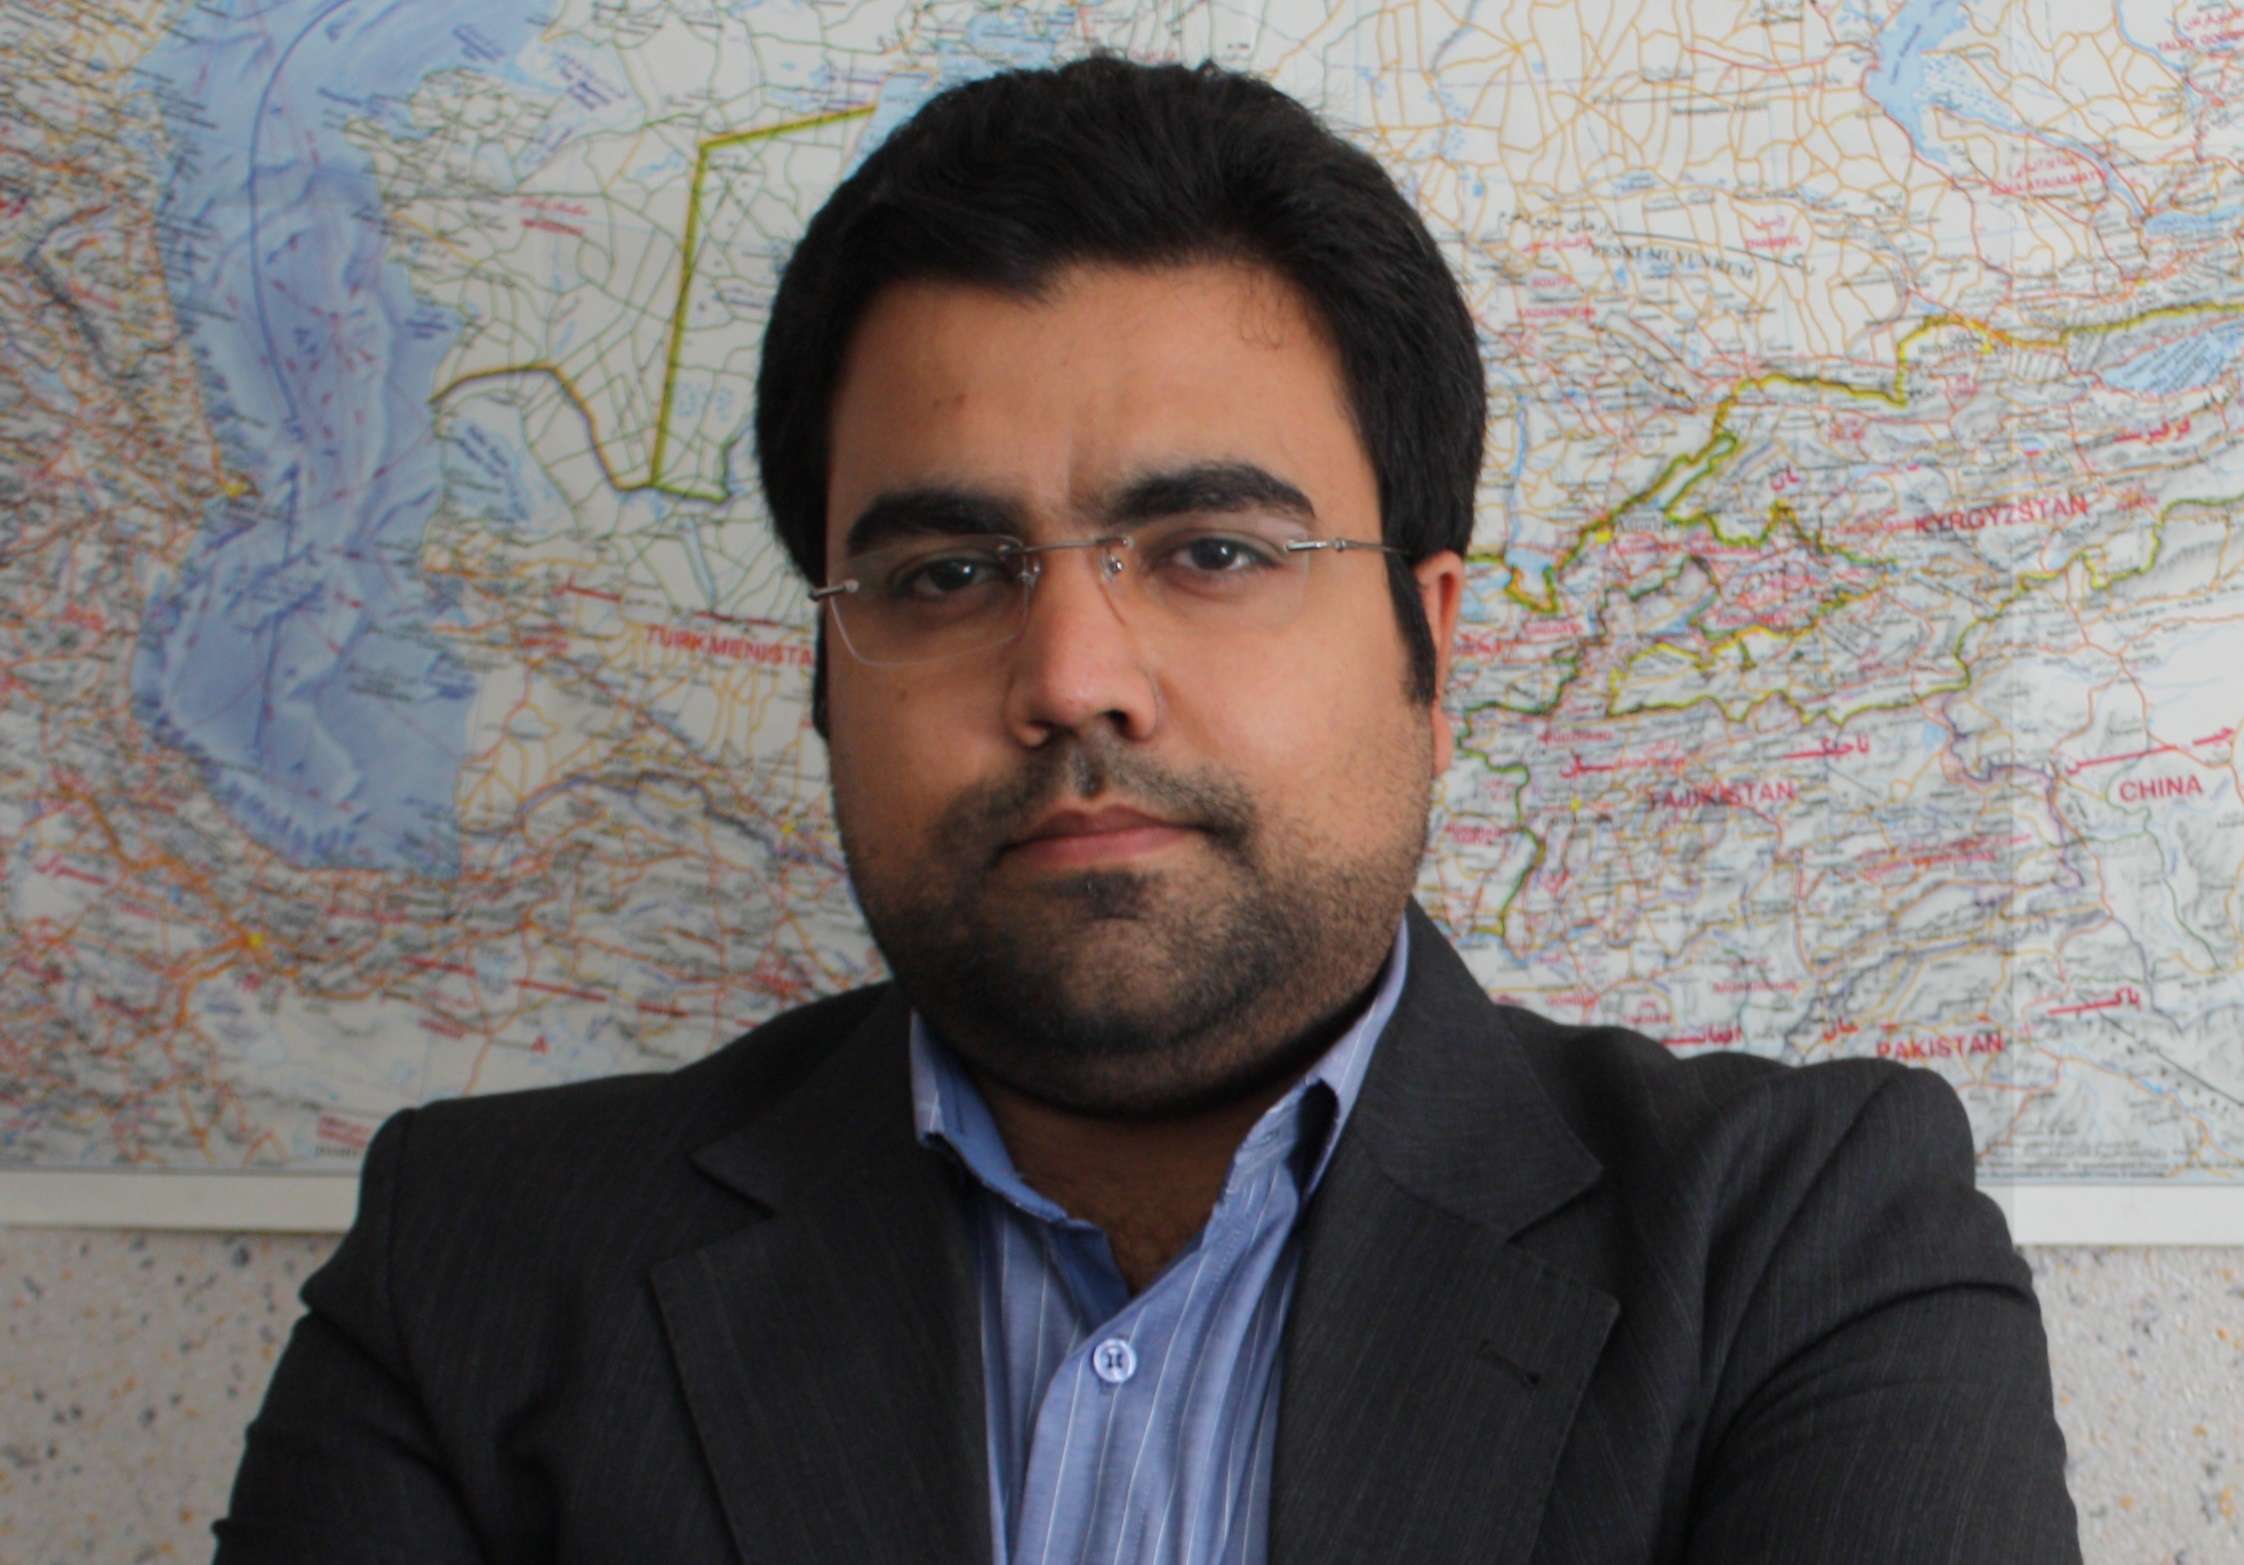 راهبرد سعودی در آسیای مرکزی: اغوای مالی و اشاعه وهابیت